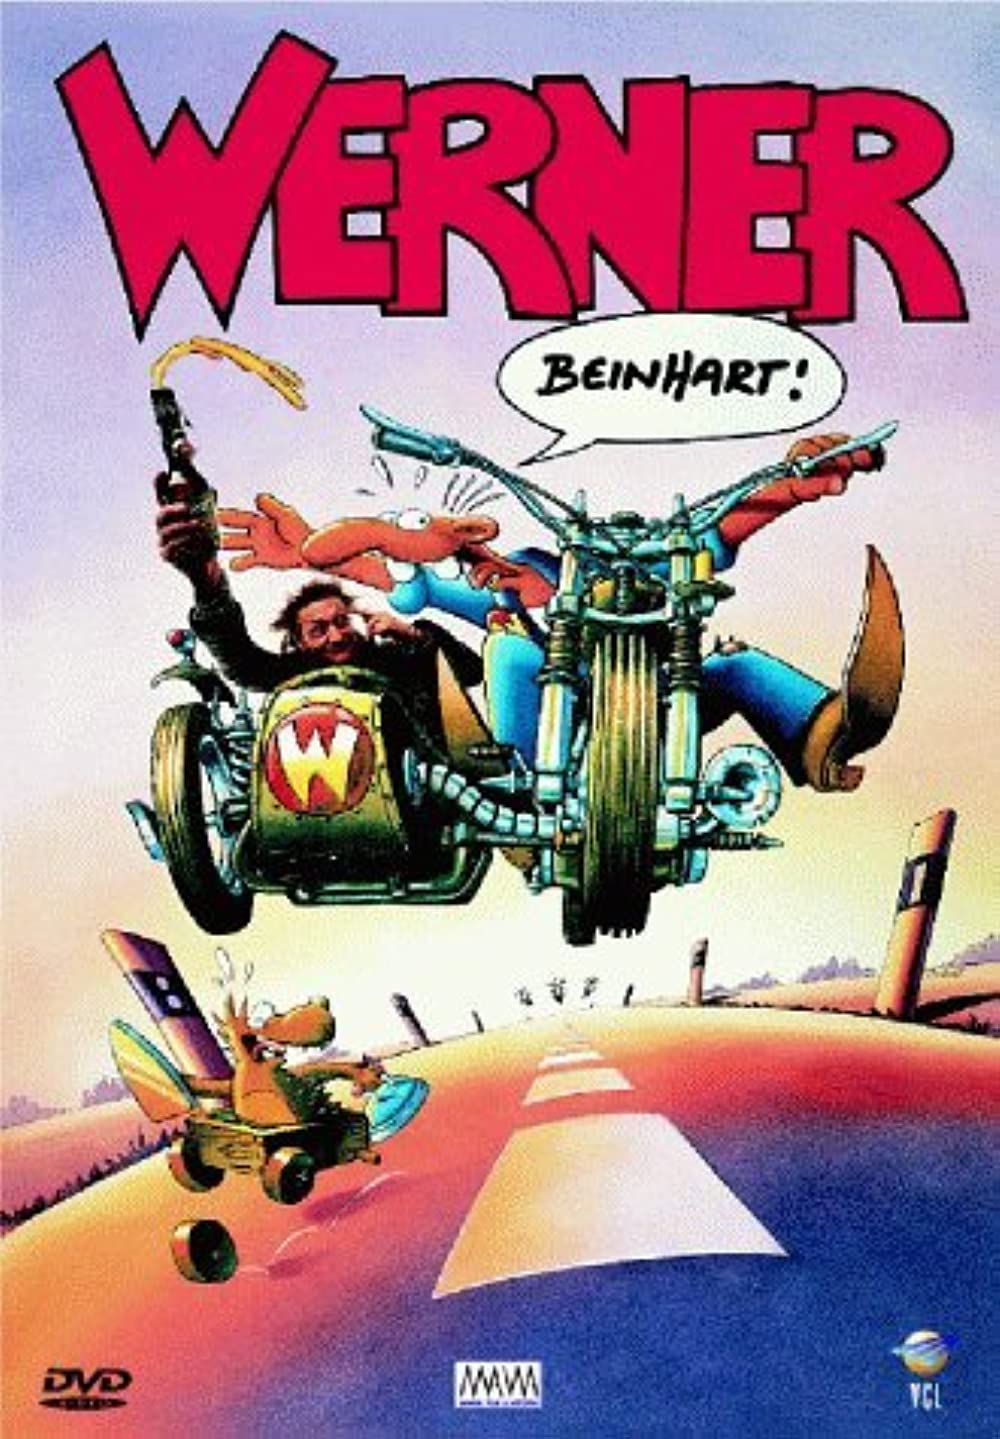 Werner - Beinhart (1990)